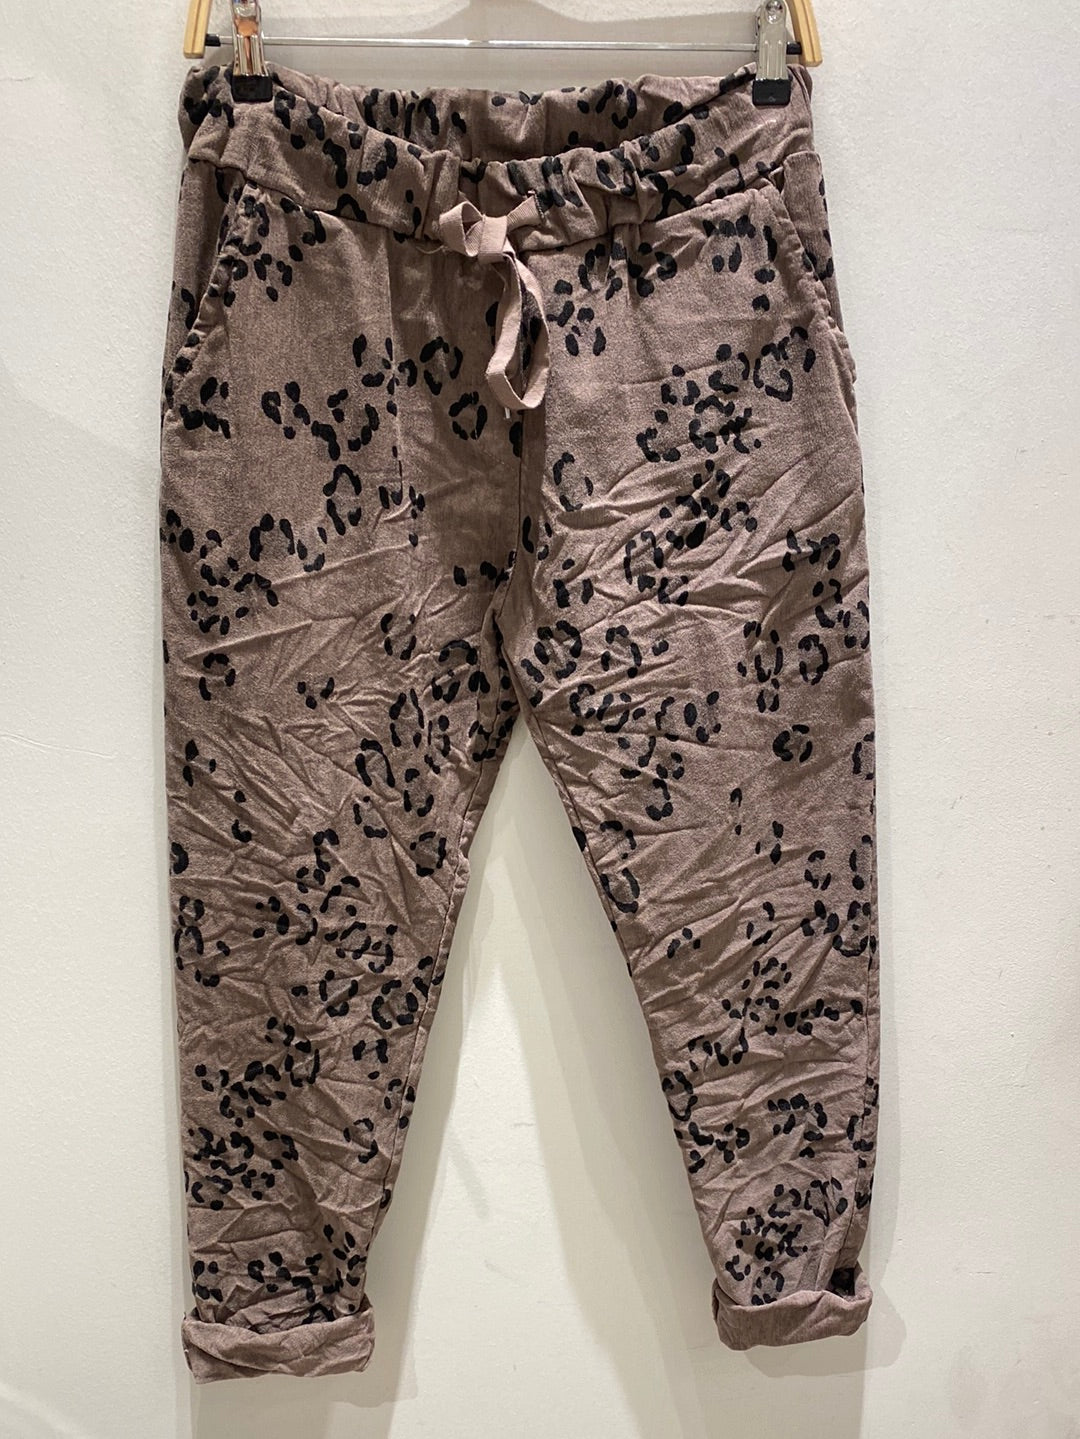 Leopard Print Draw String Waist Pants- Italian